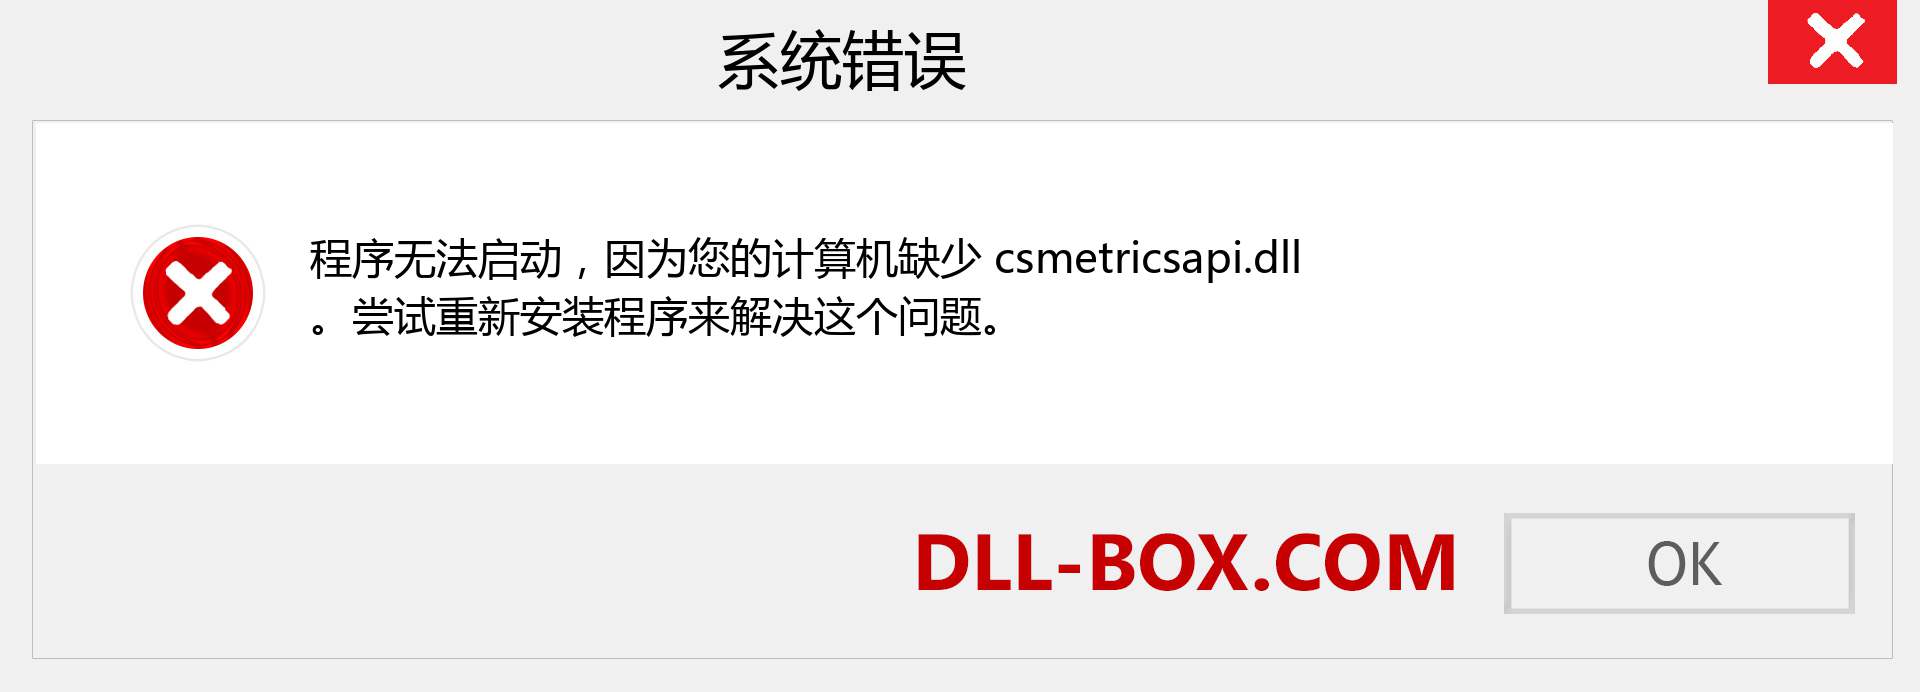 csmetricsapi.dll 文件丢失？。 适用于 Windows 7、8、10 的下载 - 修复 Windows、照片、图像上的 csmetricsapi dll 丢失错误